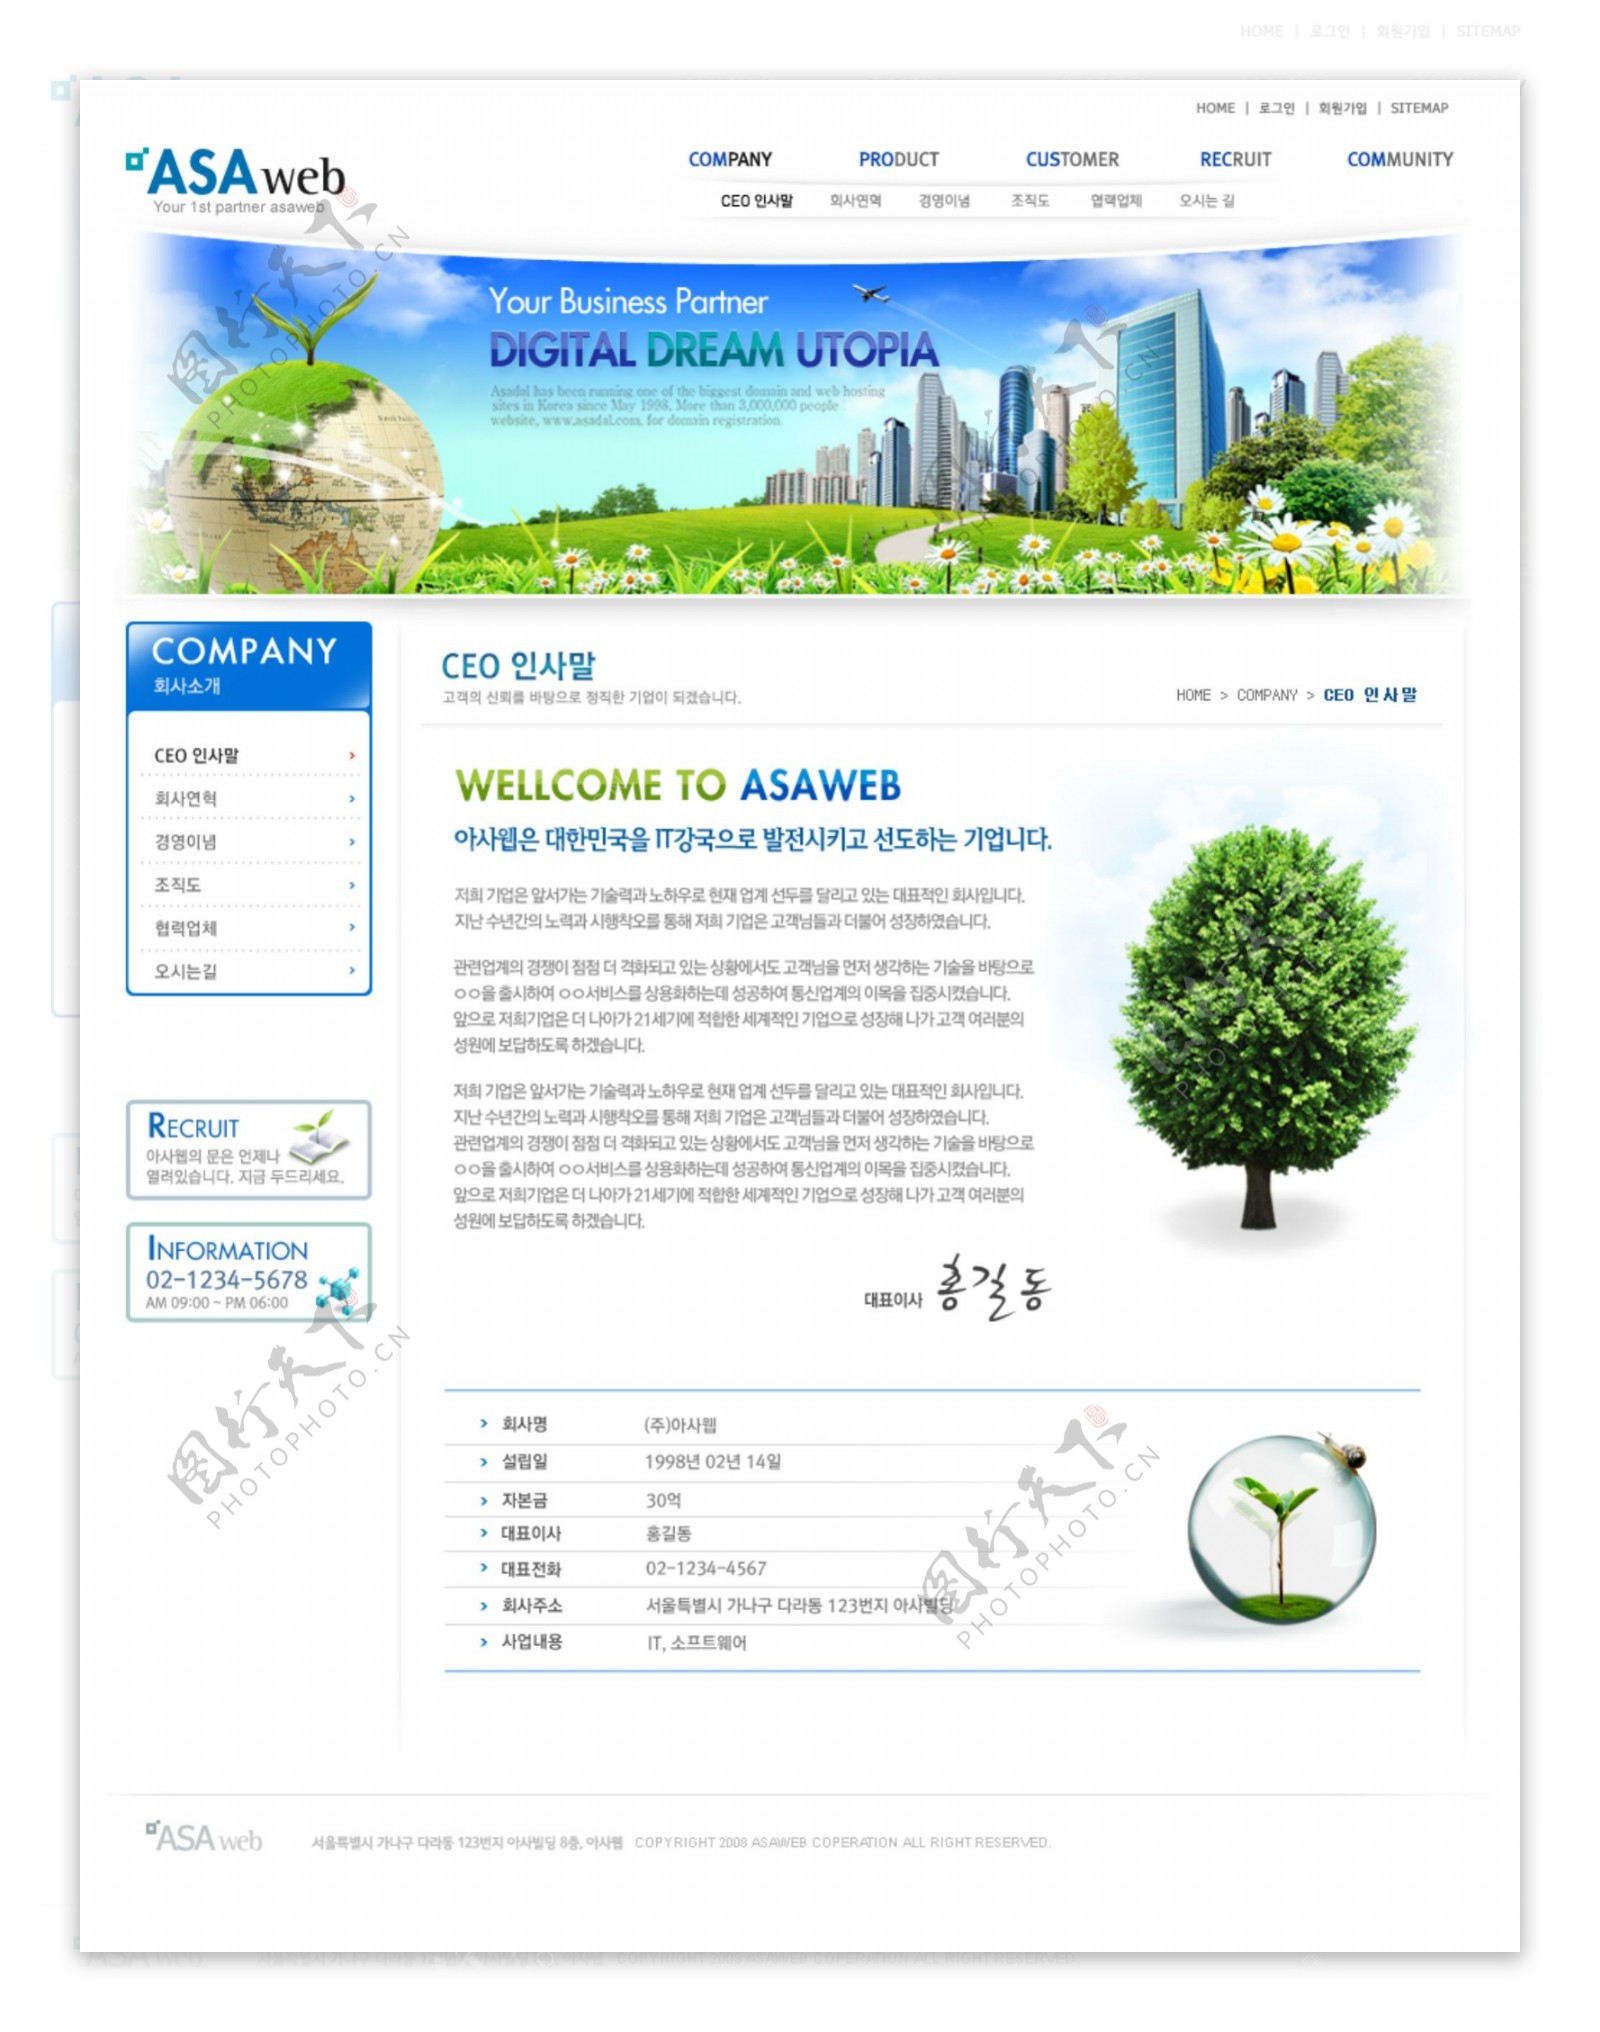 地产商类企业网站PSD网页设计模版